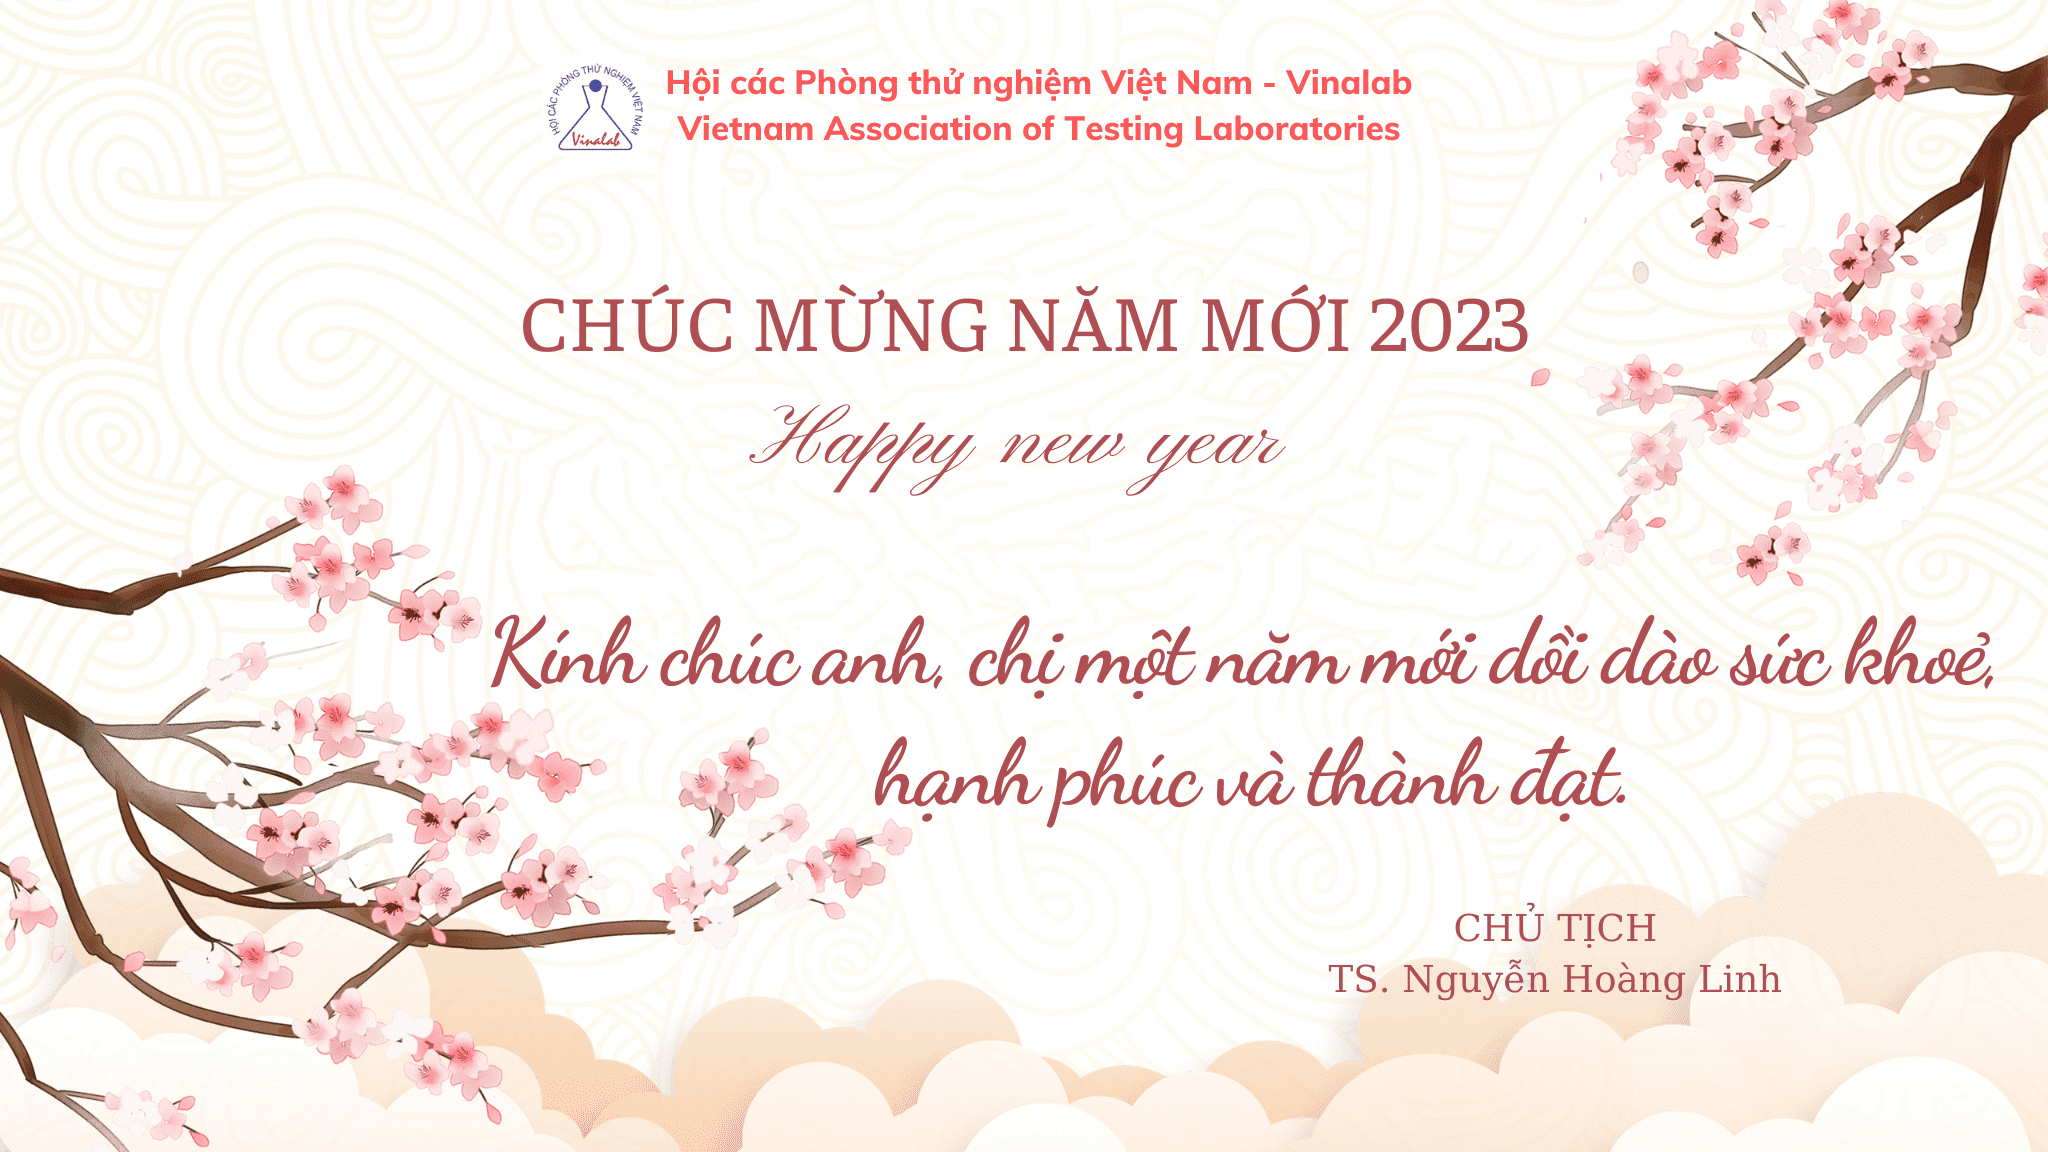 Thiếp chúc mừng năm mới 2023 của chủ tịch Hội các Phòng thử nghiệm Việt Nam